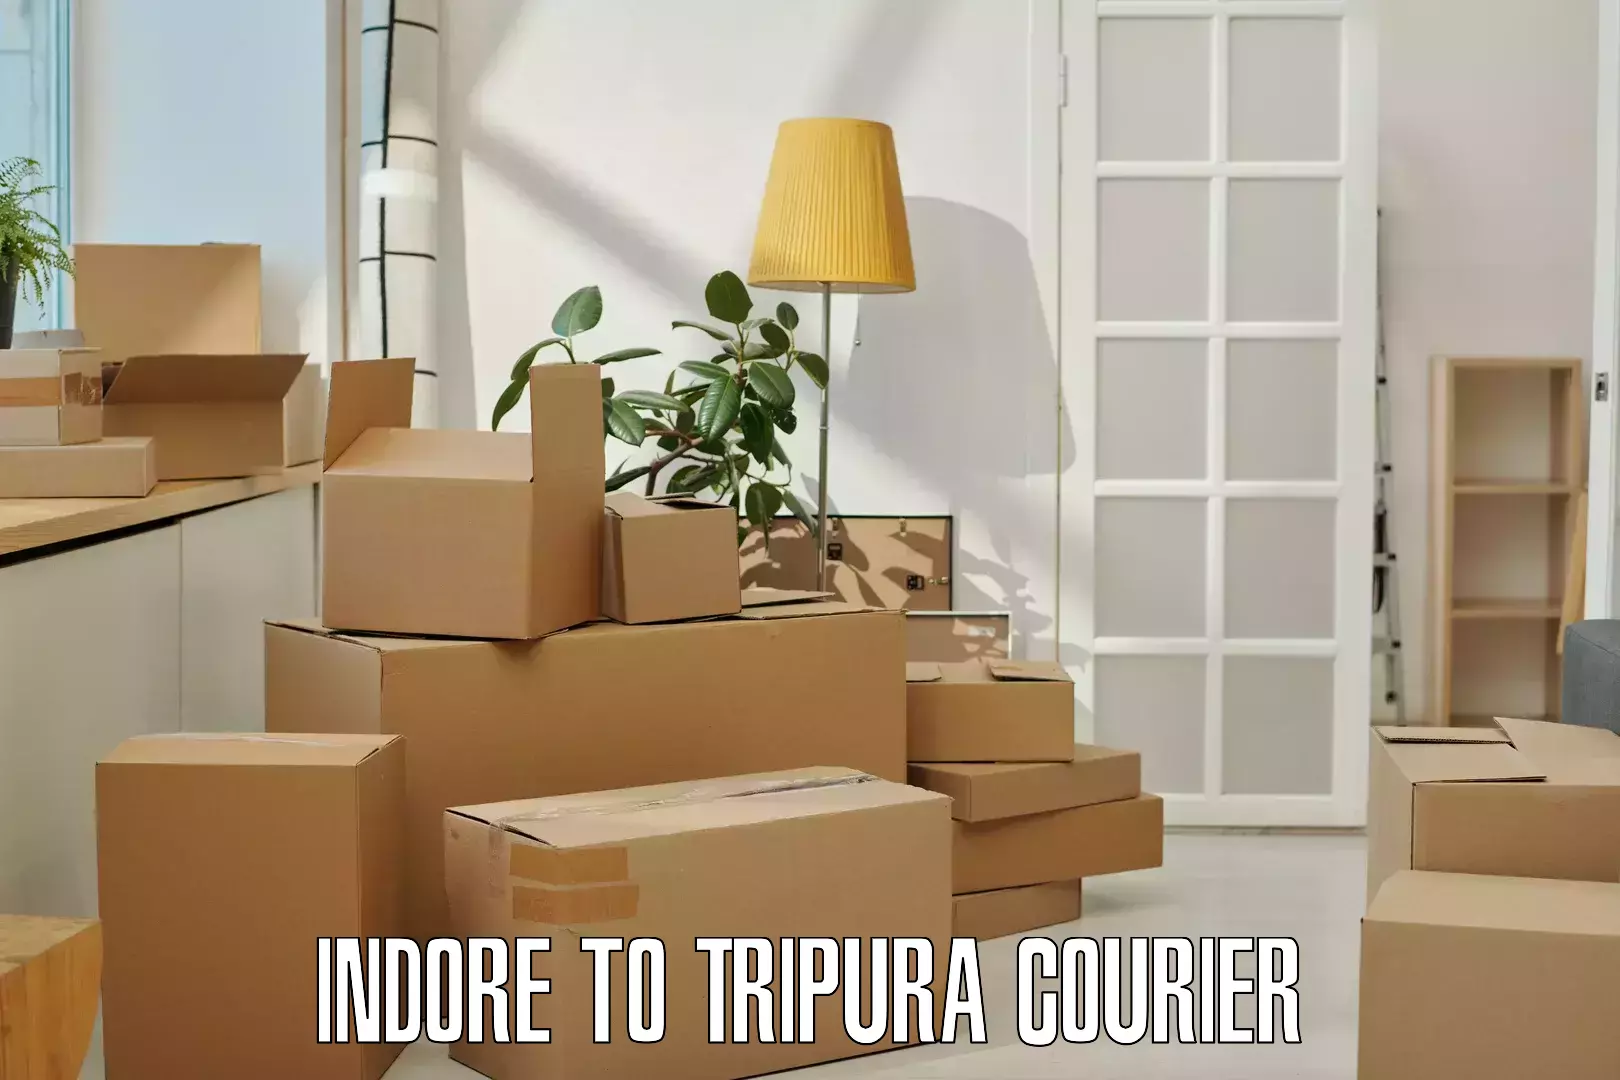 Courier service comparison Indore to Amarpur Gomati